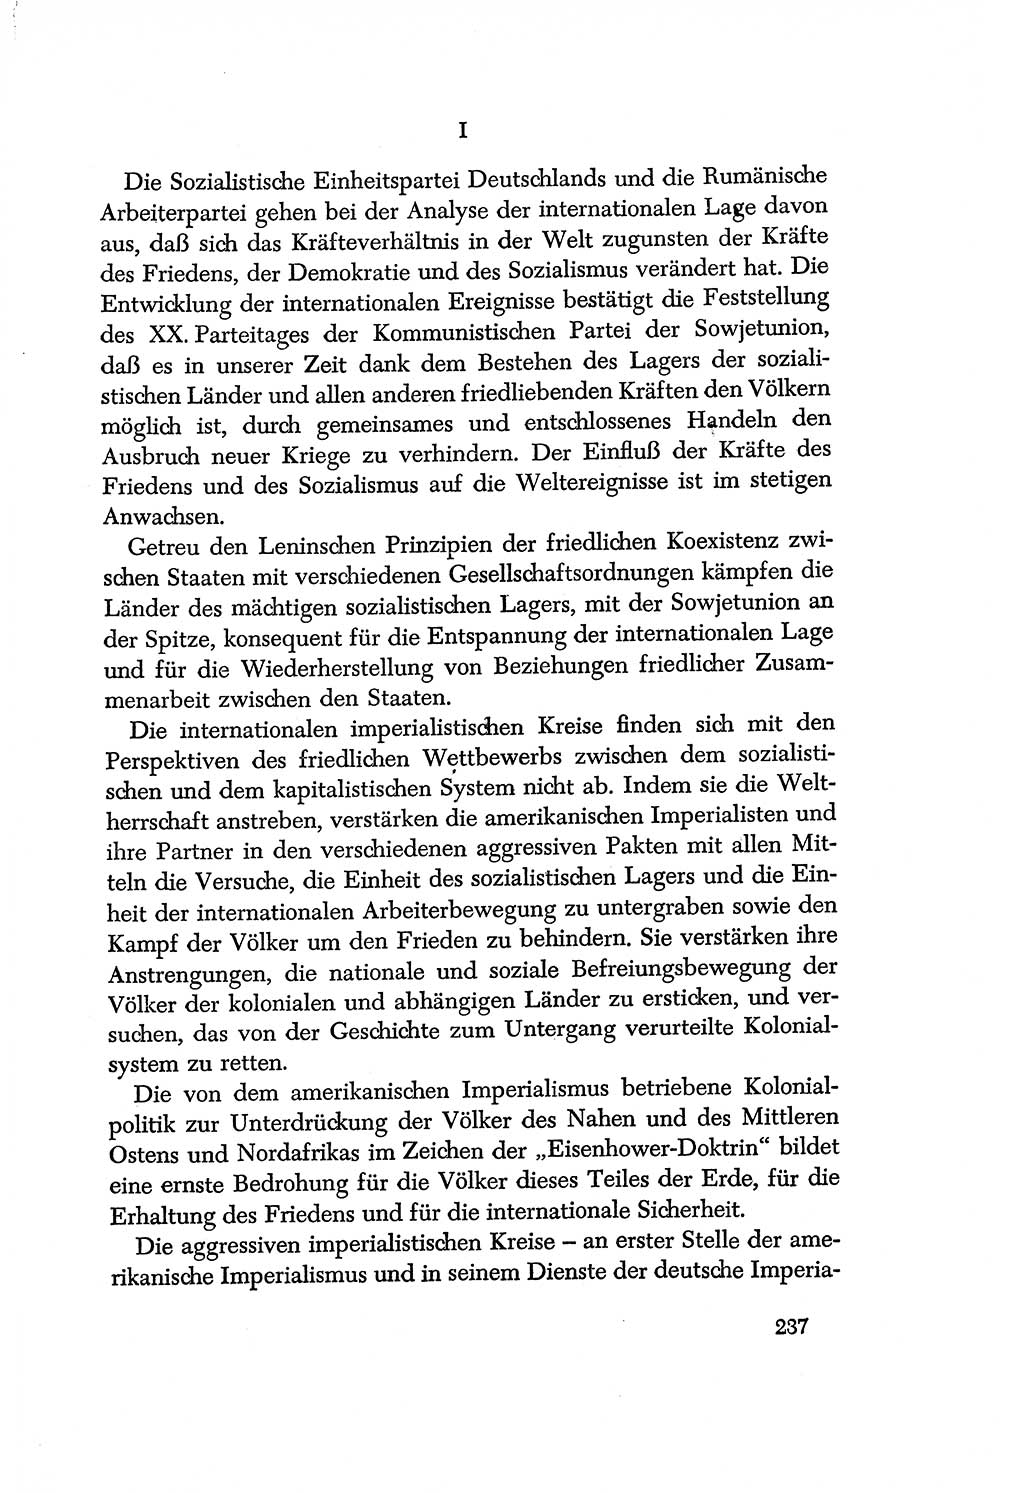 Dokumente der Sozialistischen Einheitspartei Deutschlands (SED) [Deutsche Demokratische Republik (DDR)] 1956-1957, Seite 237 (Dok. SED DDR 1956-1957, S. 237)